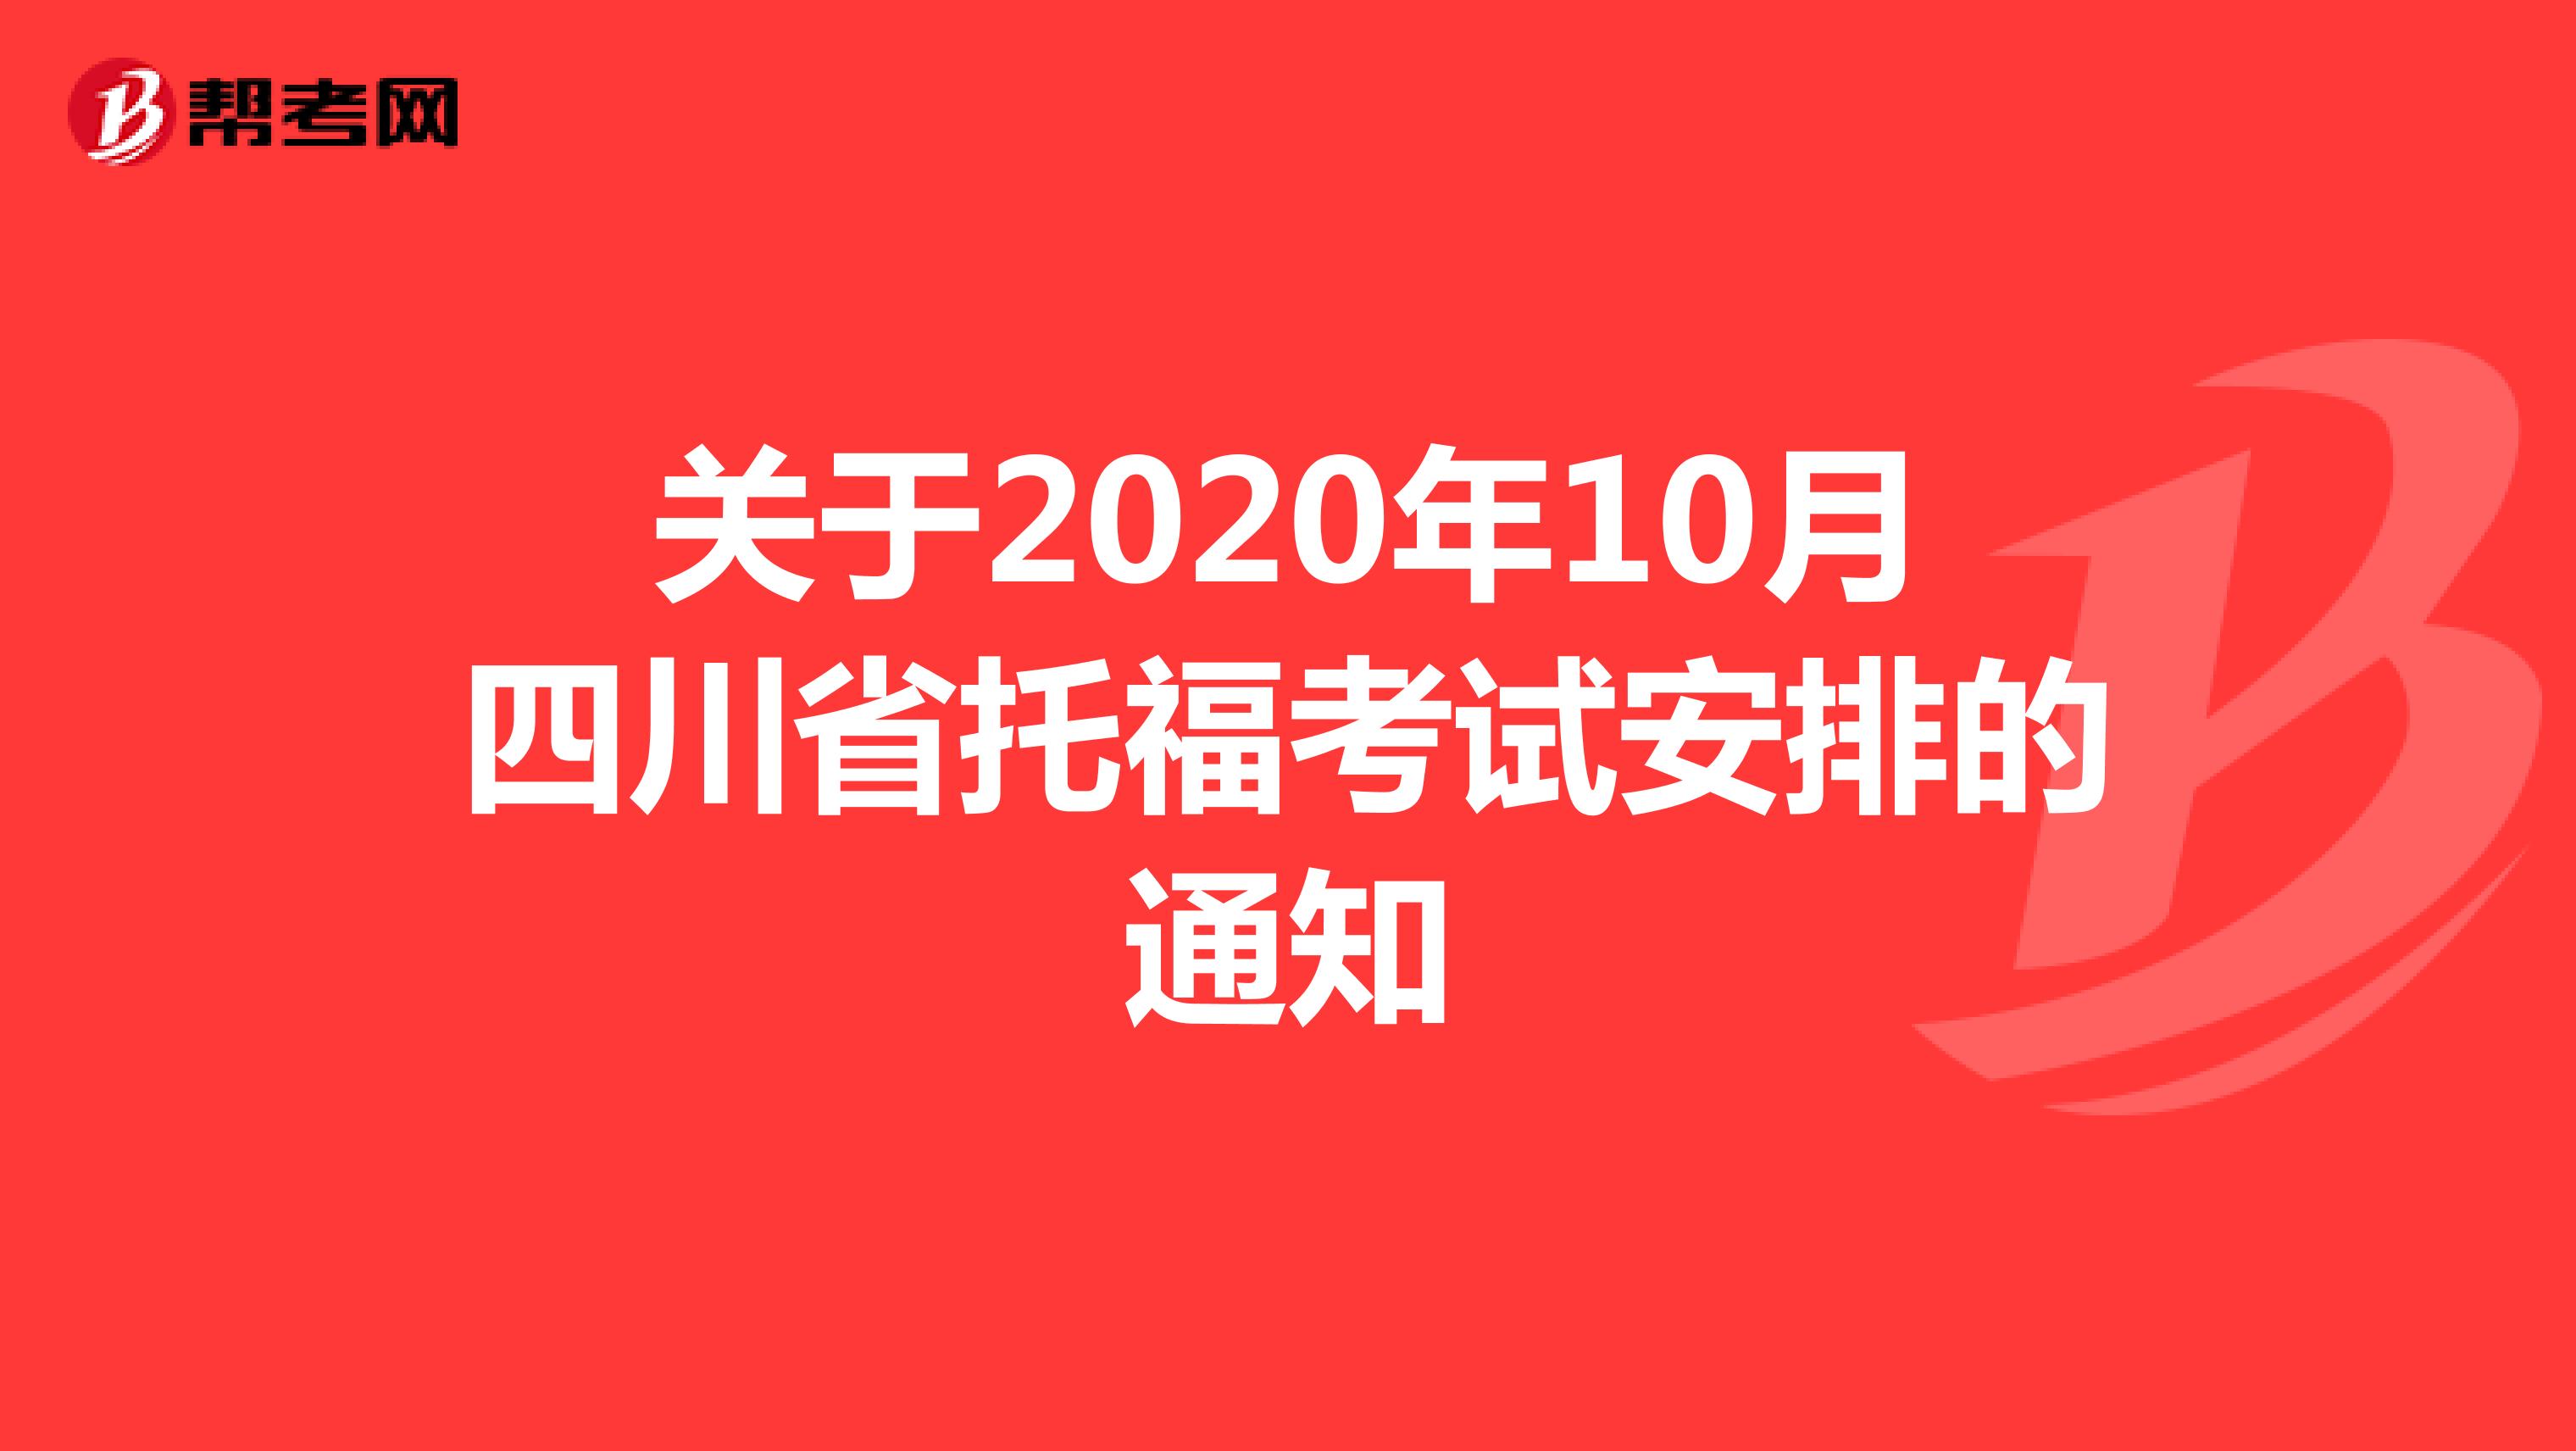 关于2020年10月四川省托福考试安排的通知